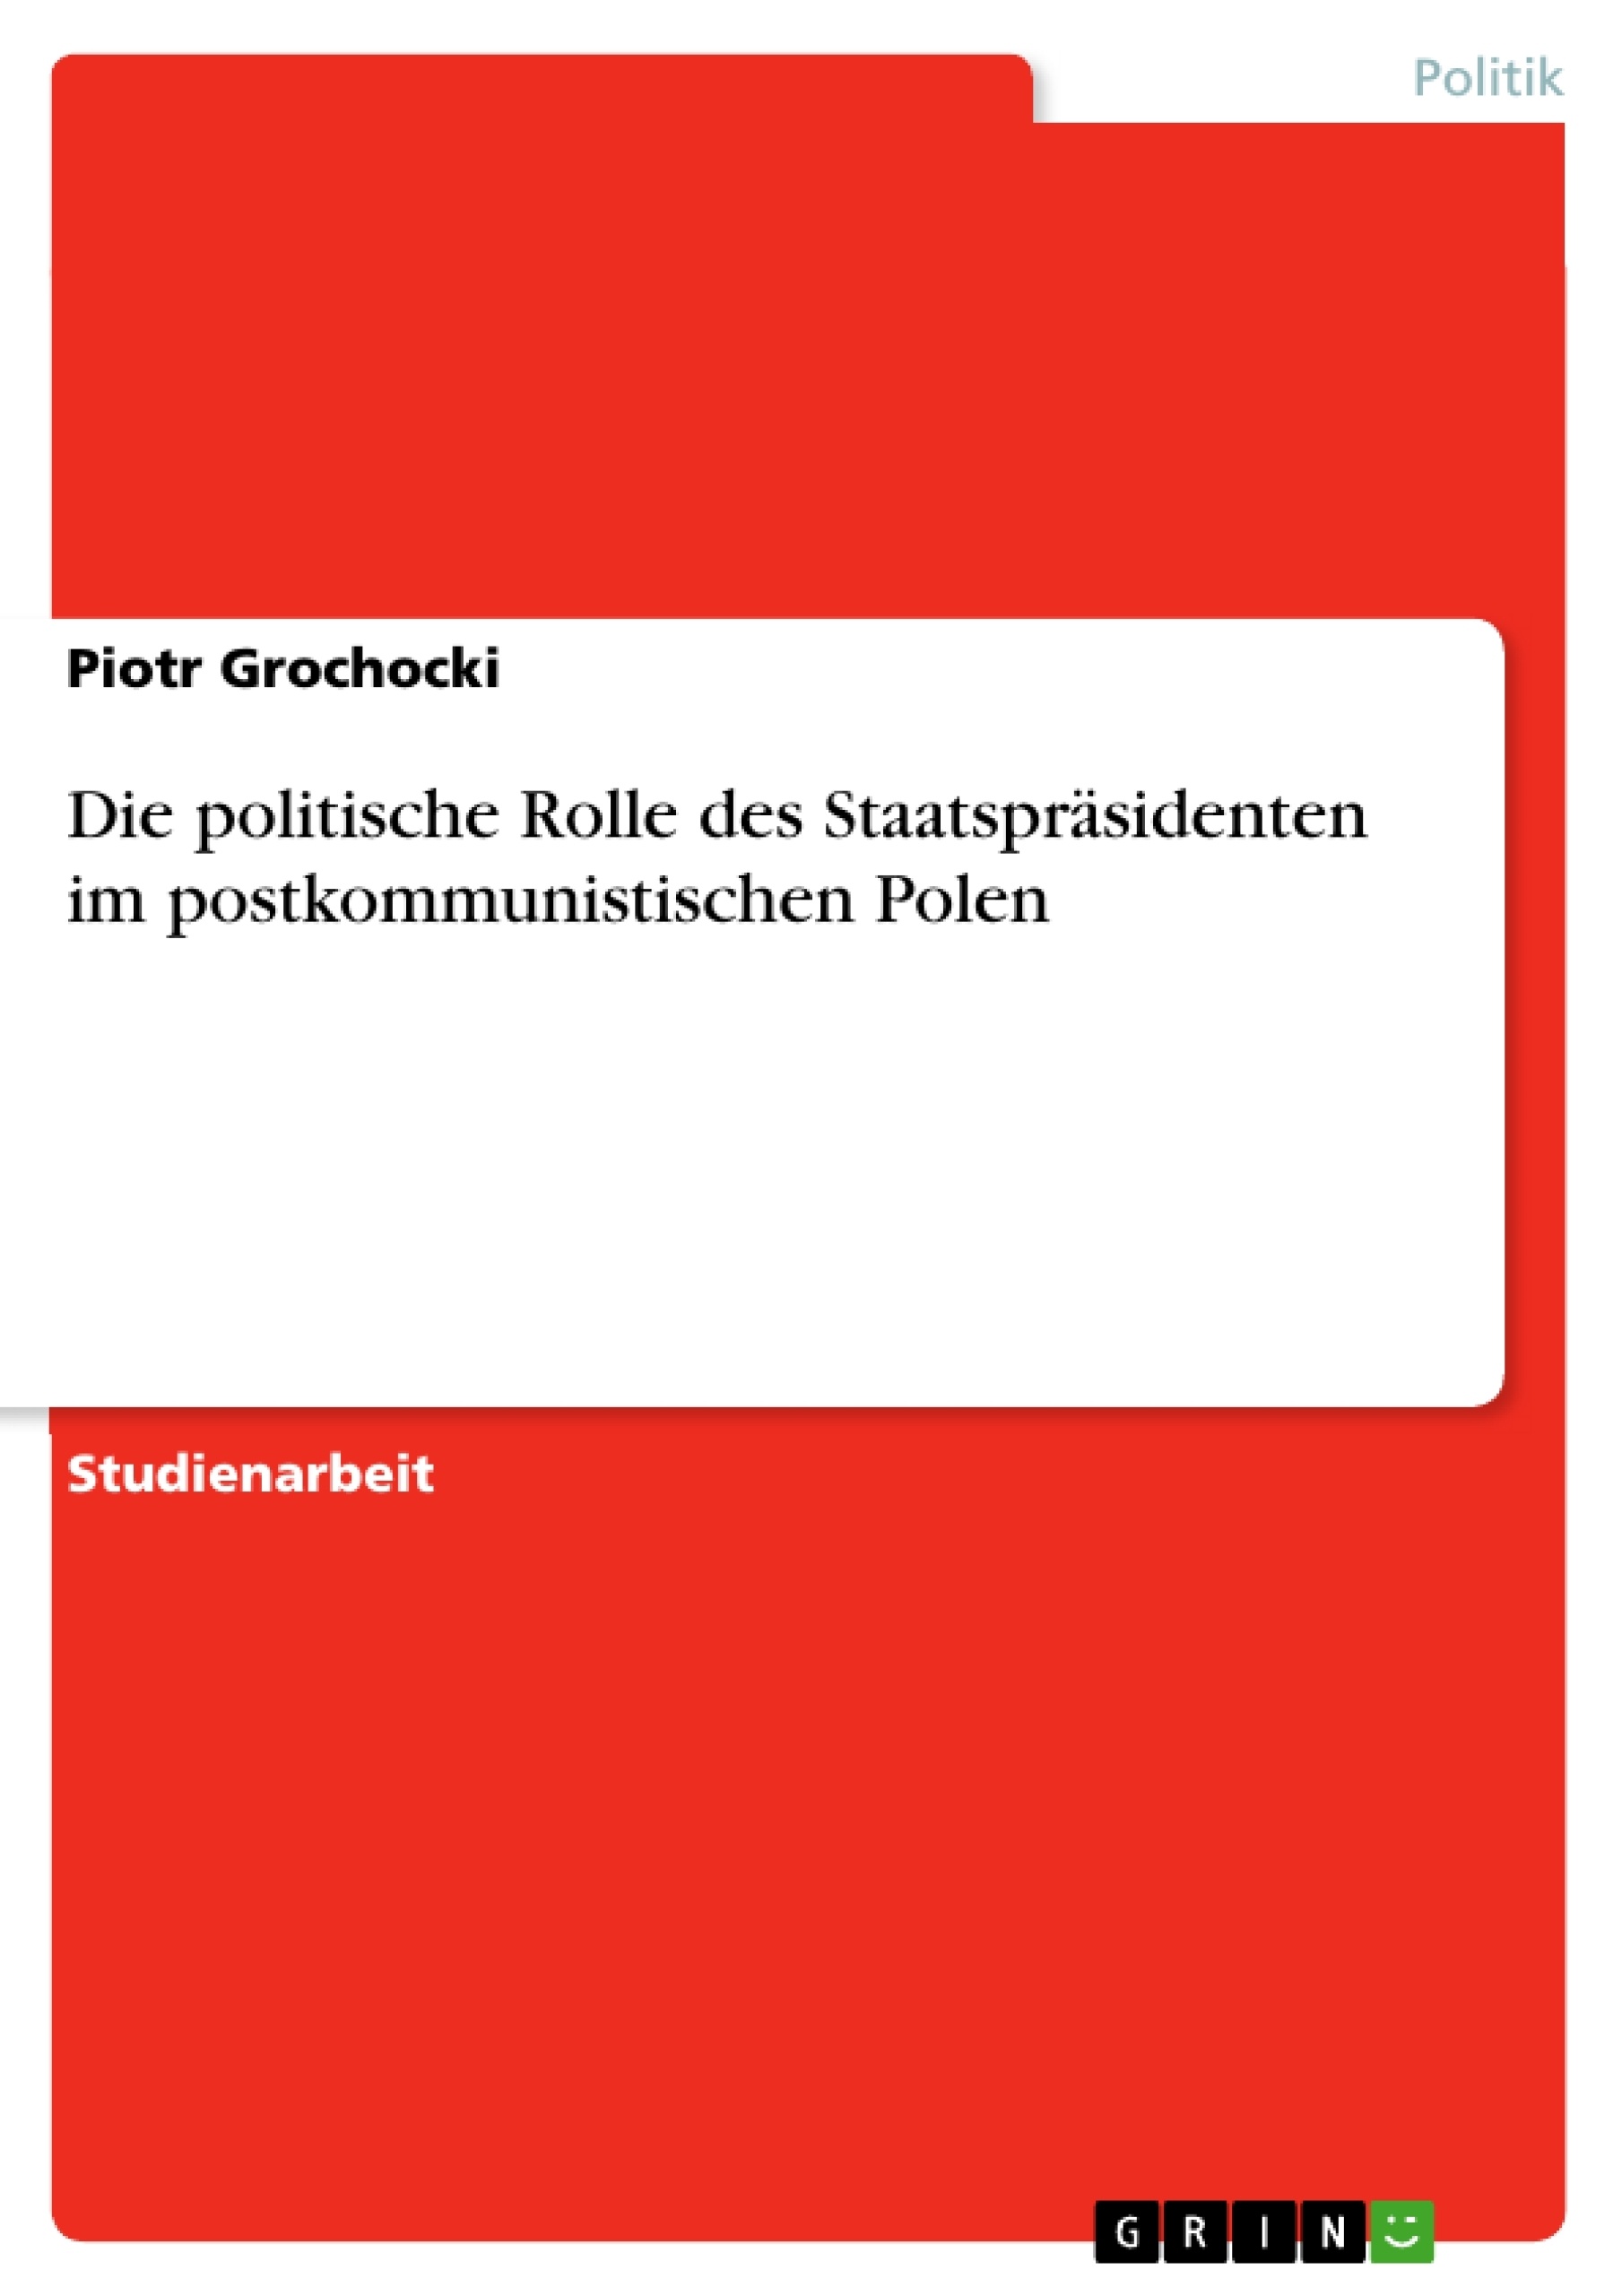 Title: Die politische Rolle des Staatspräsidenten im postkommunistischen Polen